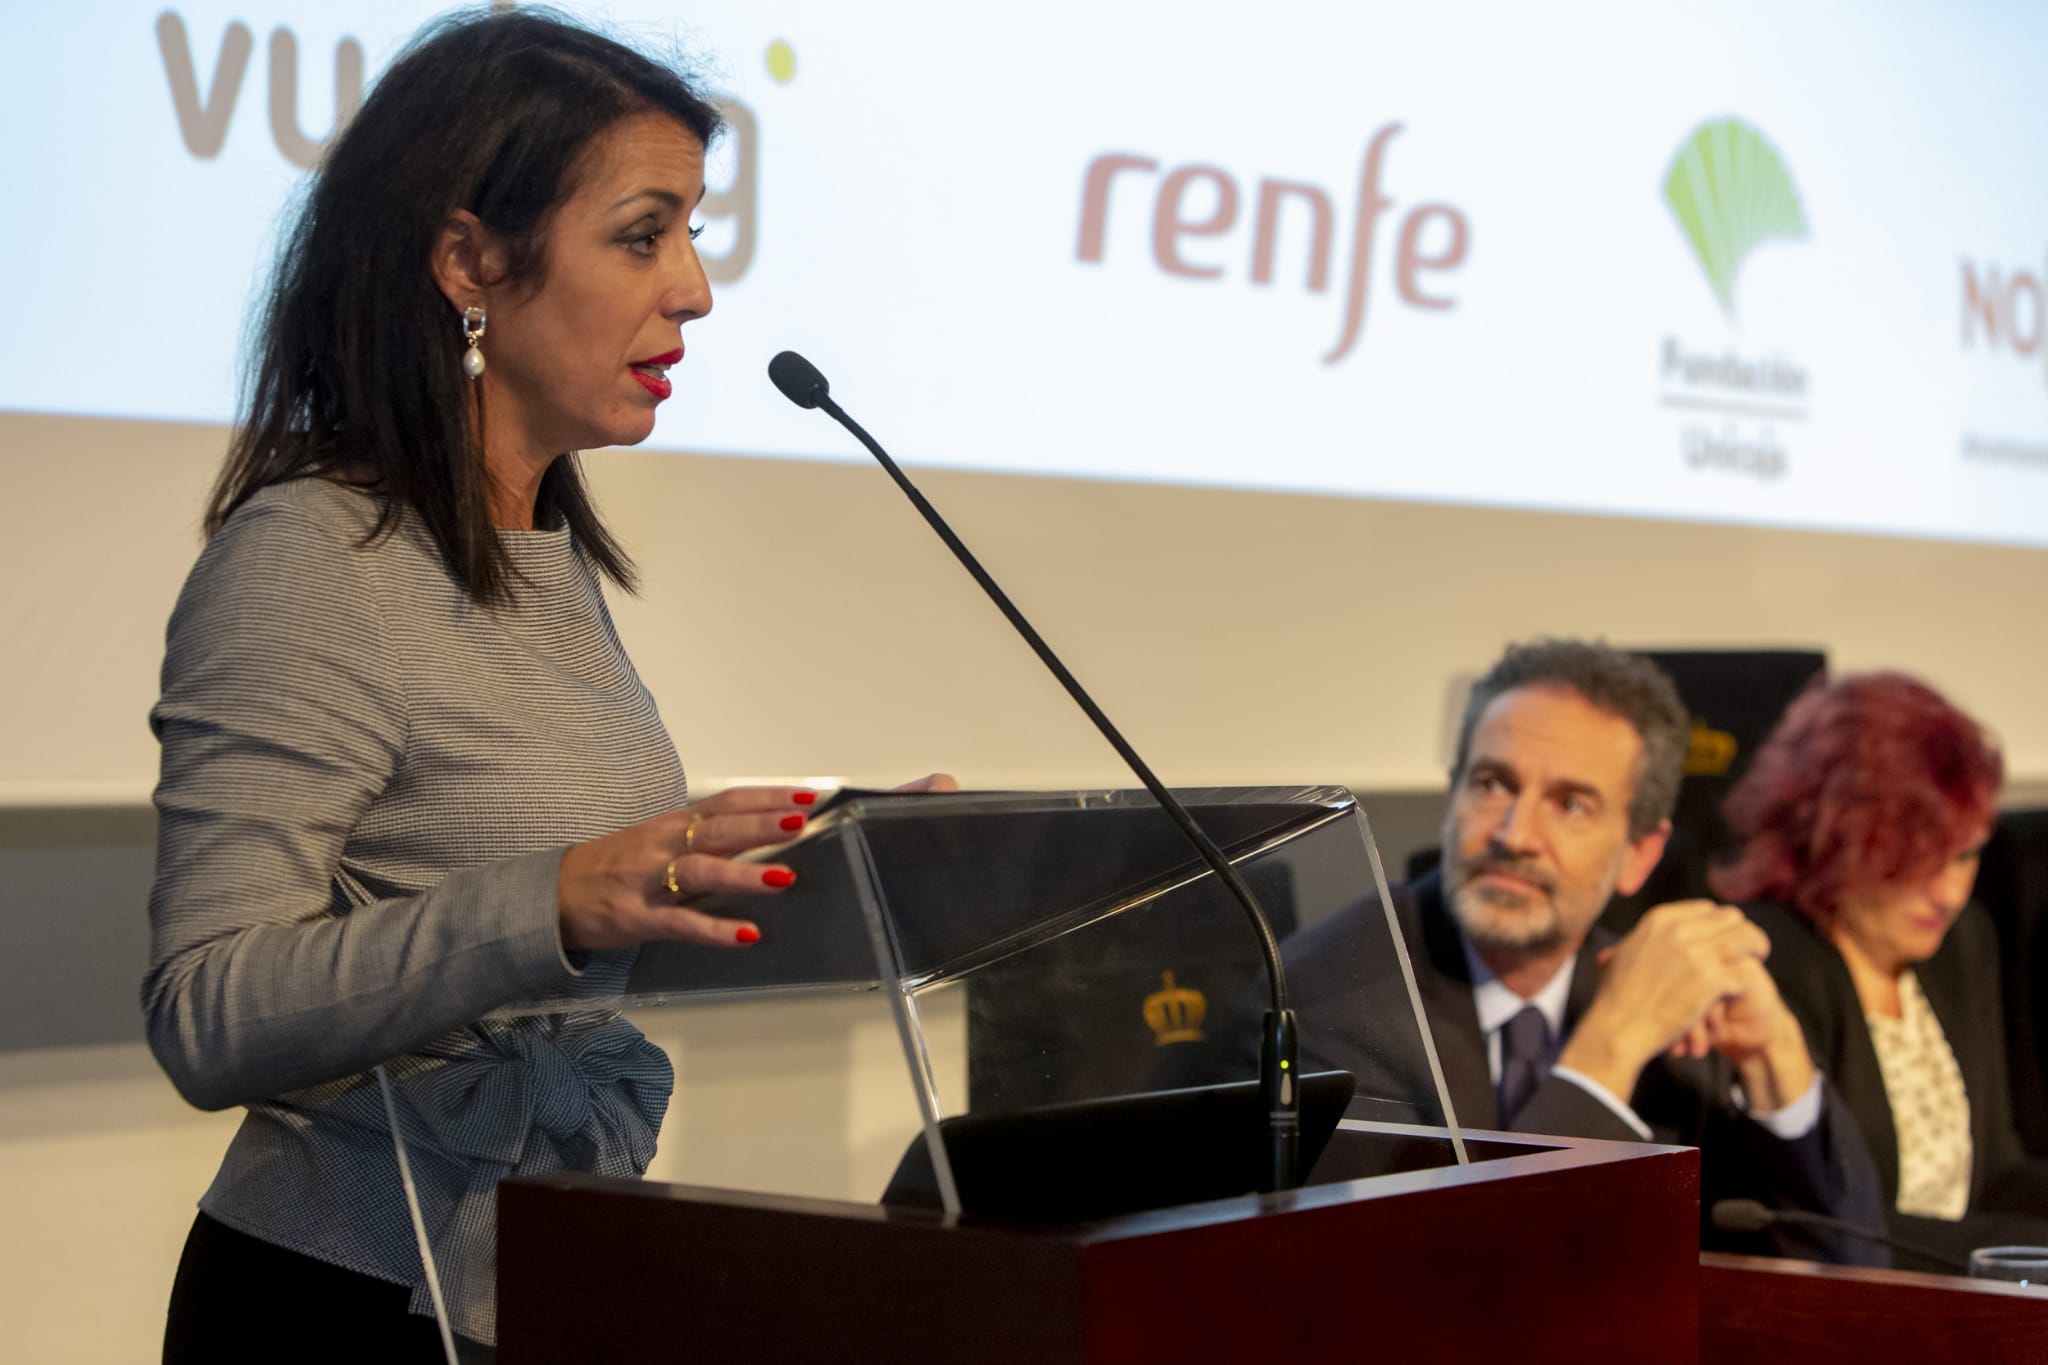 Marta Bosquet durante su discurso en el acto de presentacin de la biografa de la creadora de Save the Children 